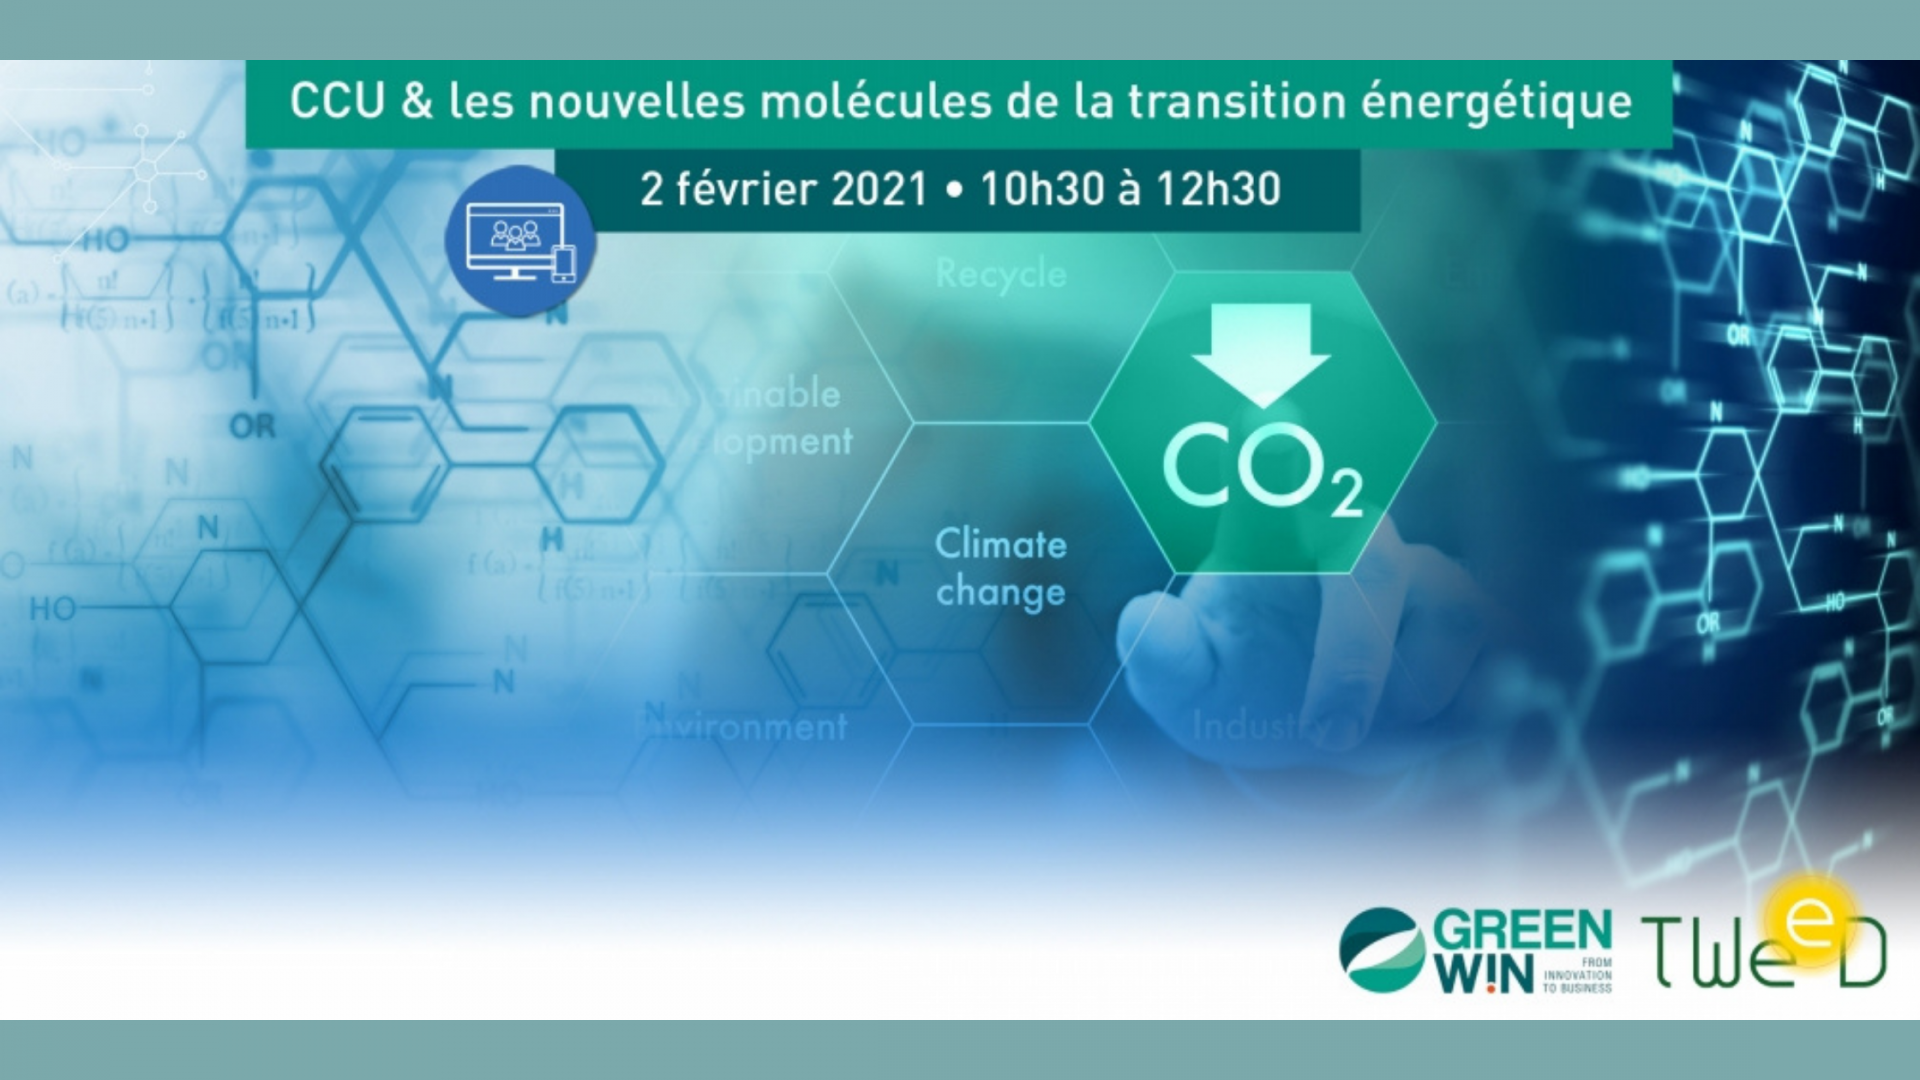 CCU & les nouvelles molécules de la transition énergétique: Prenez part au webinaire organisé par GreenWin et TWEED